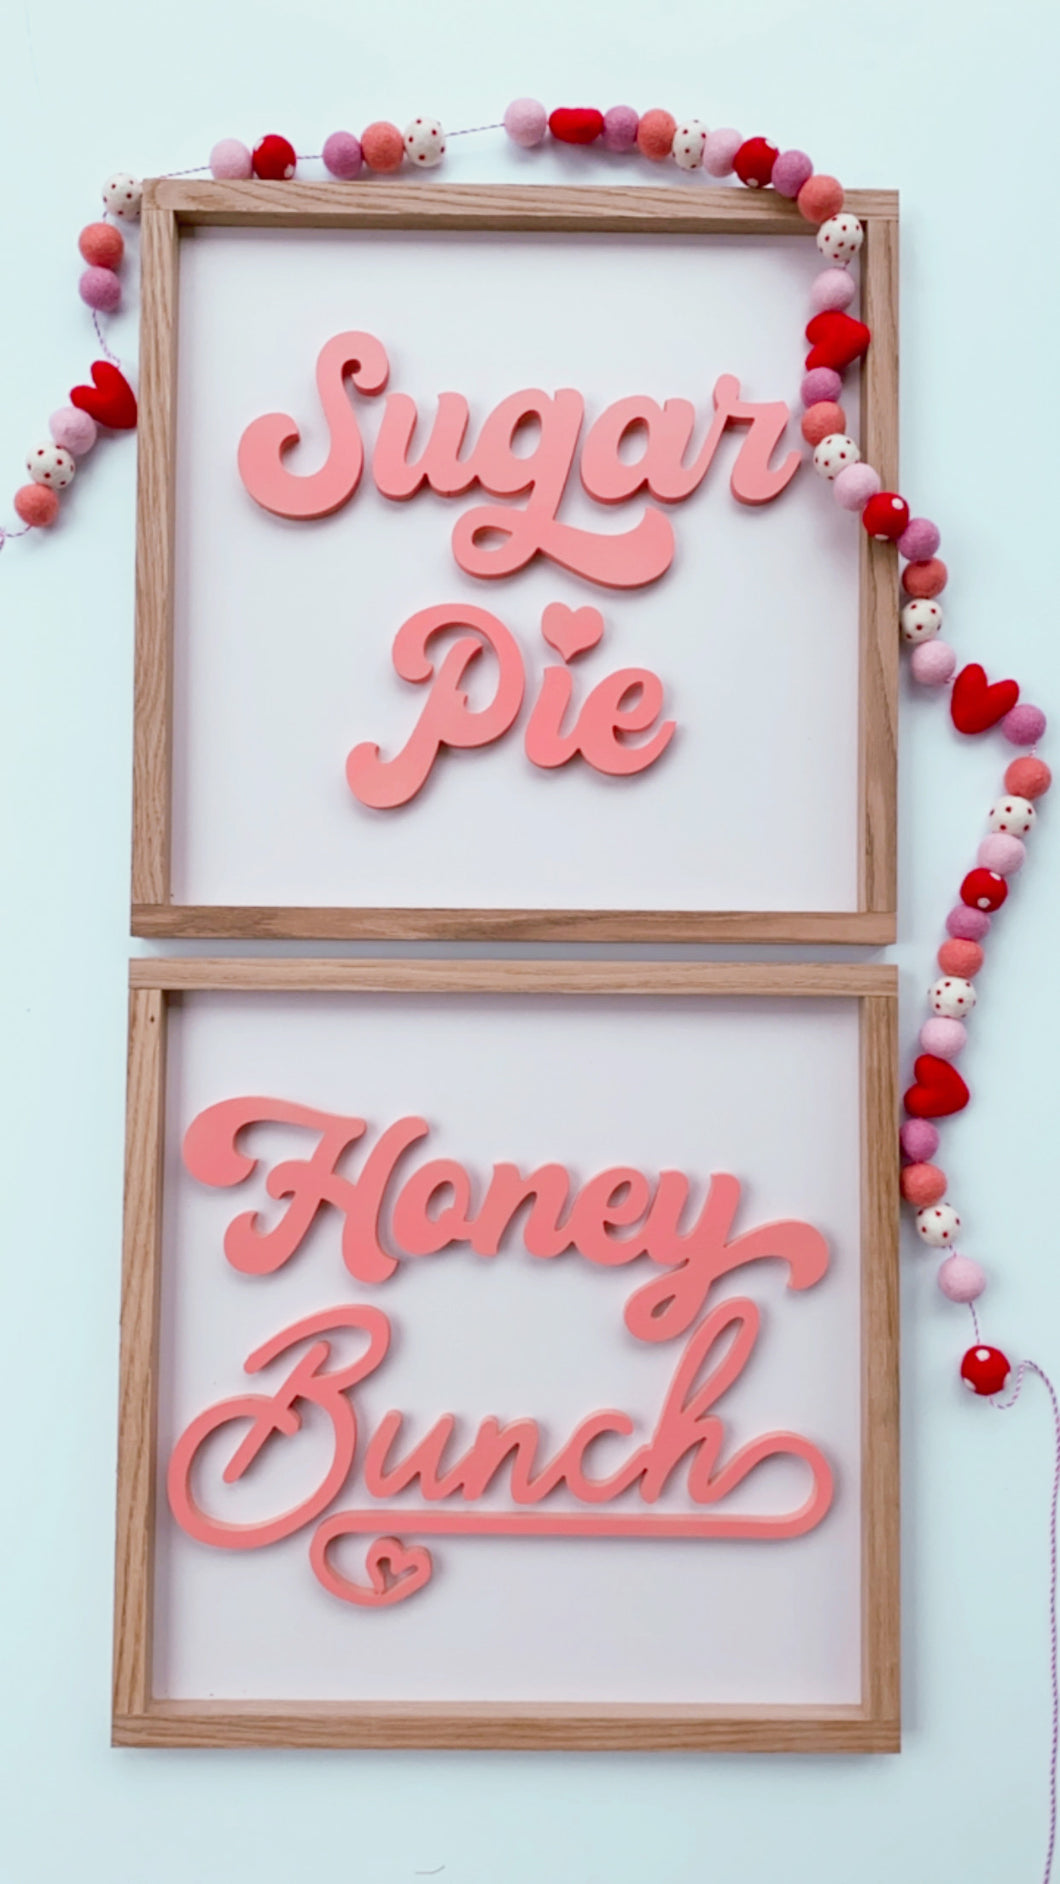 Honeybunch  - Peach ( Sugar Pie sold separately)